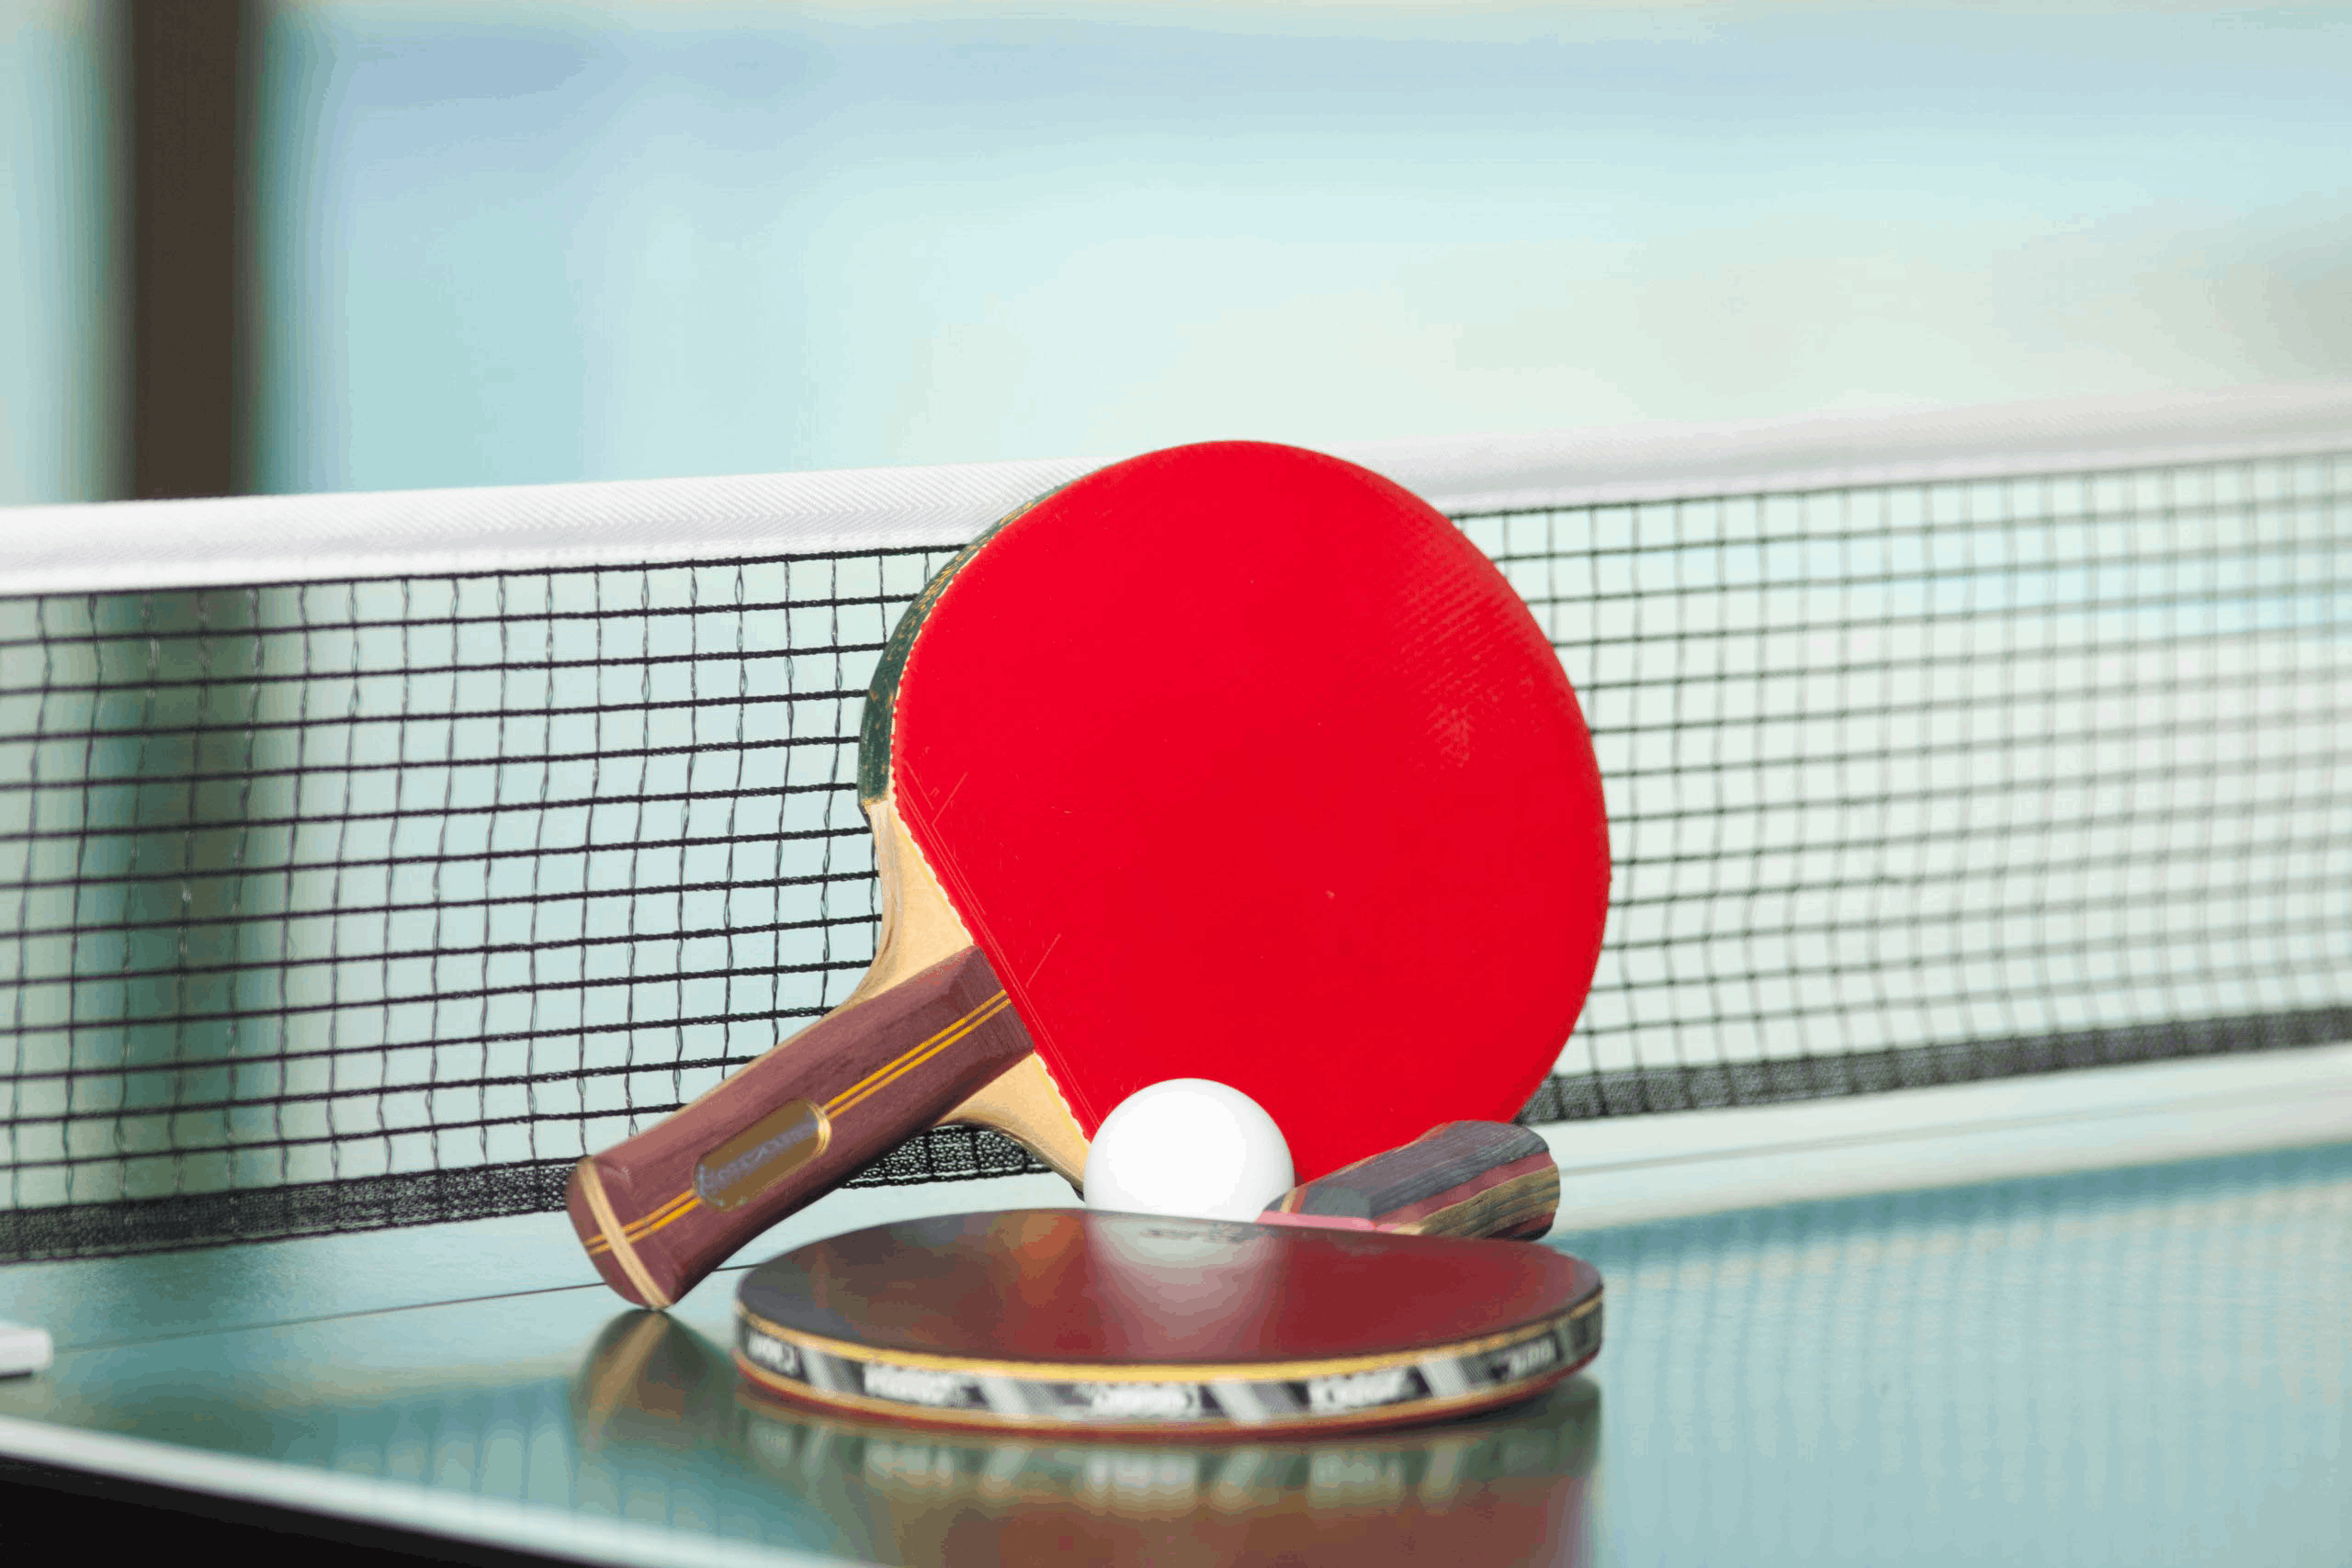 Всемирный день настольного тенниса отметили традиционным турниром.